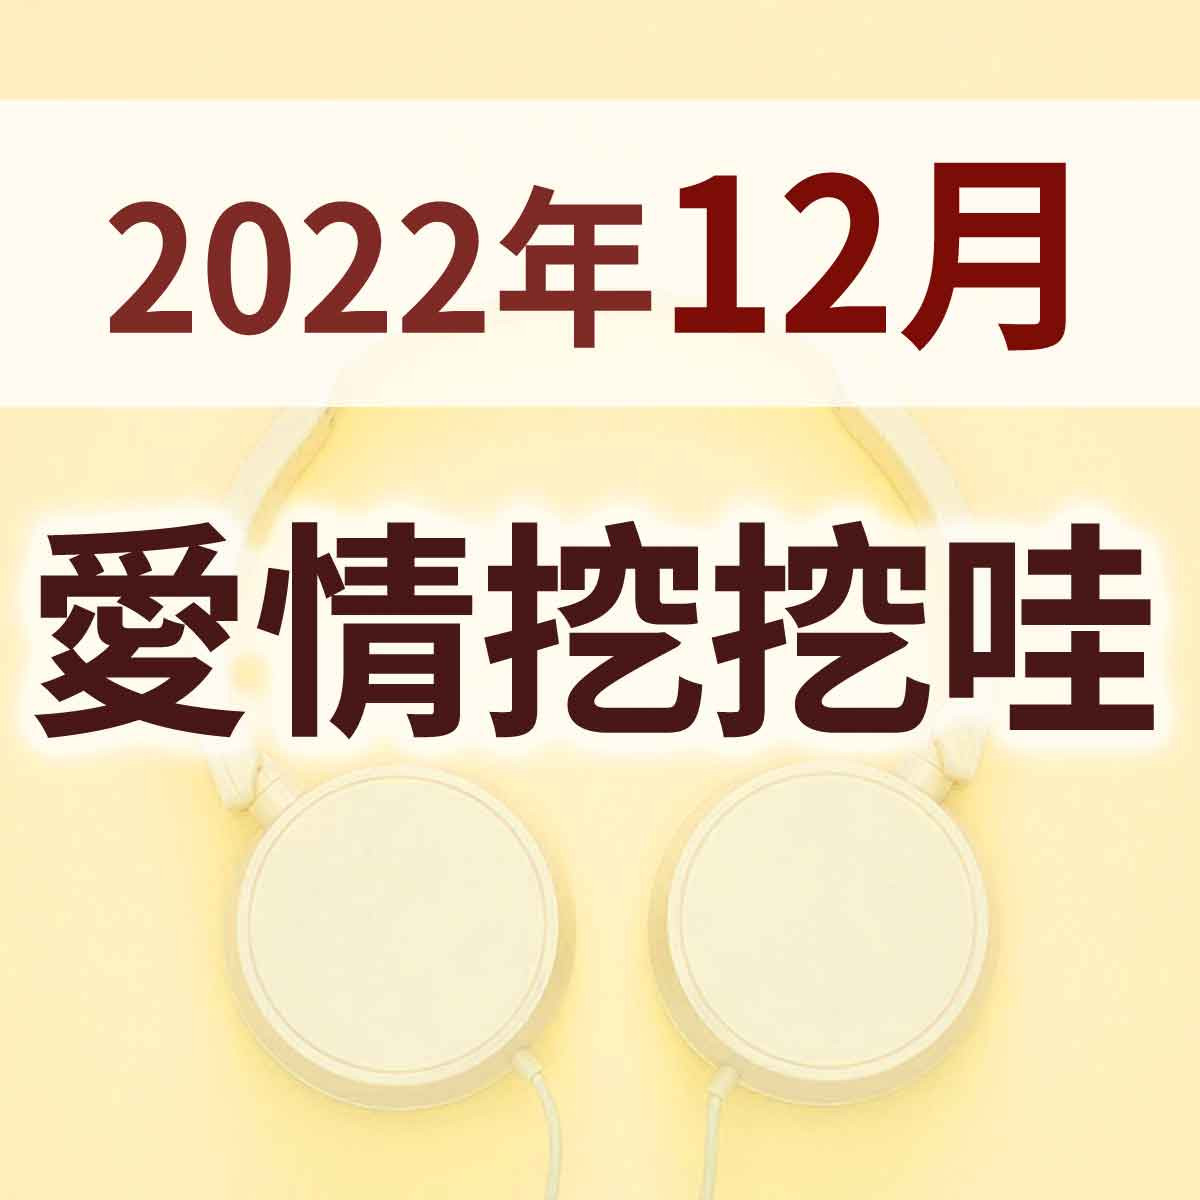 2022年12月 - 02-天下無不吵架的夫妻封面圖